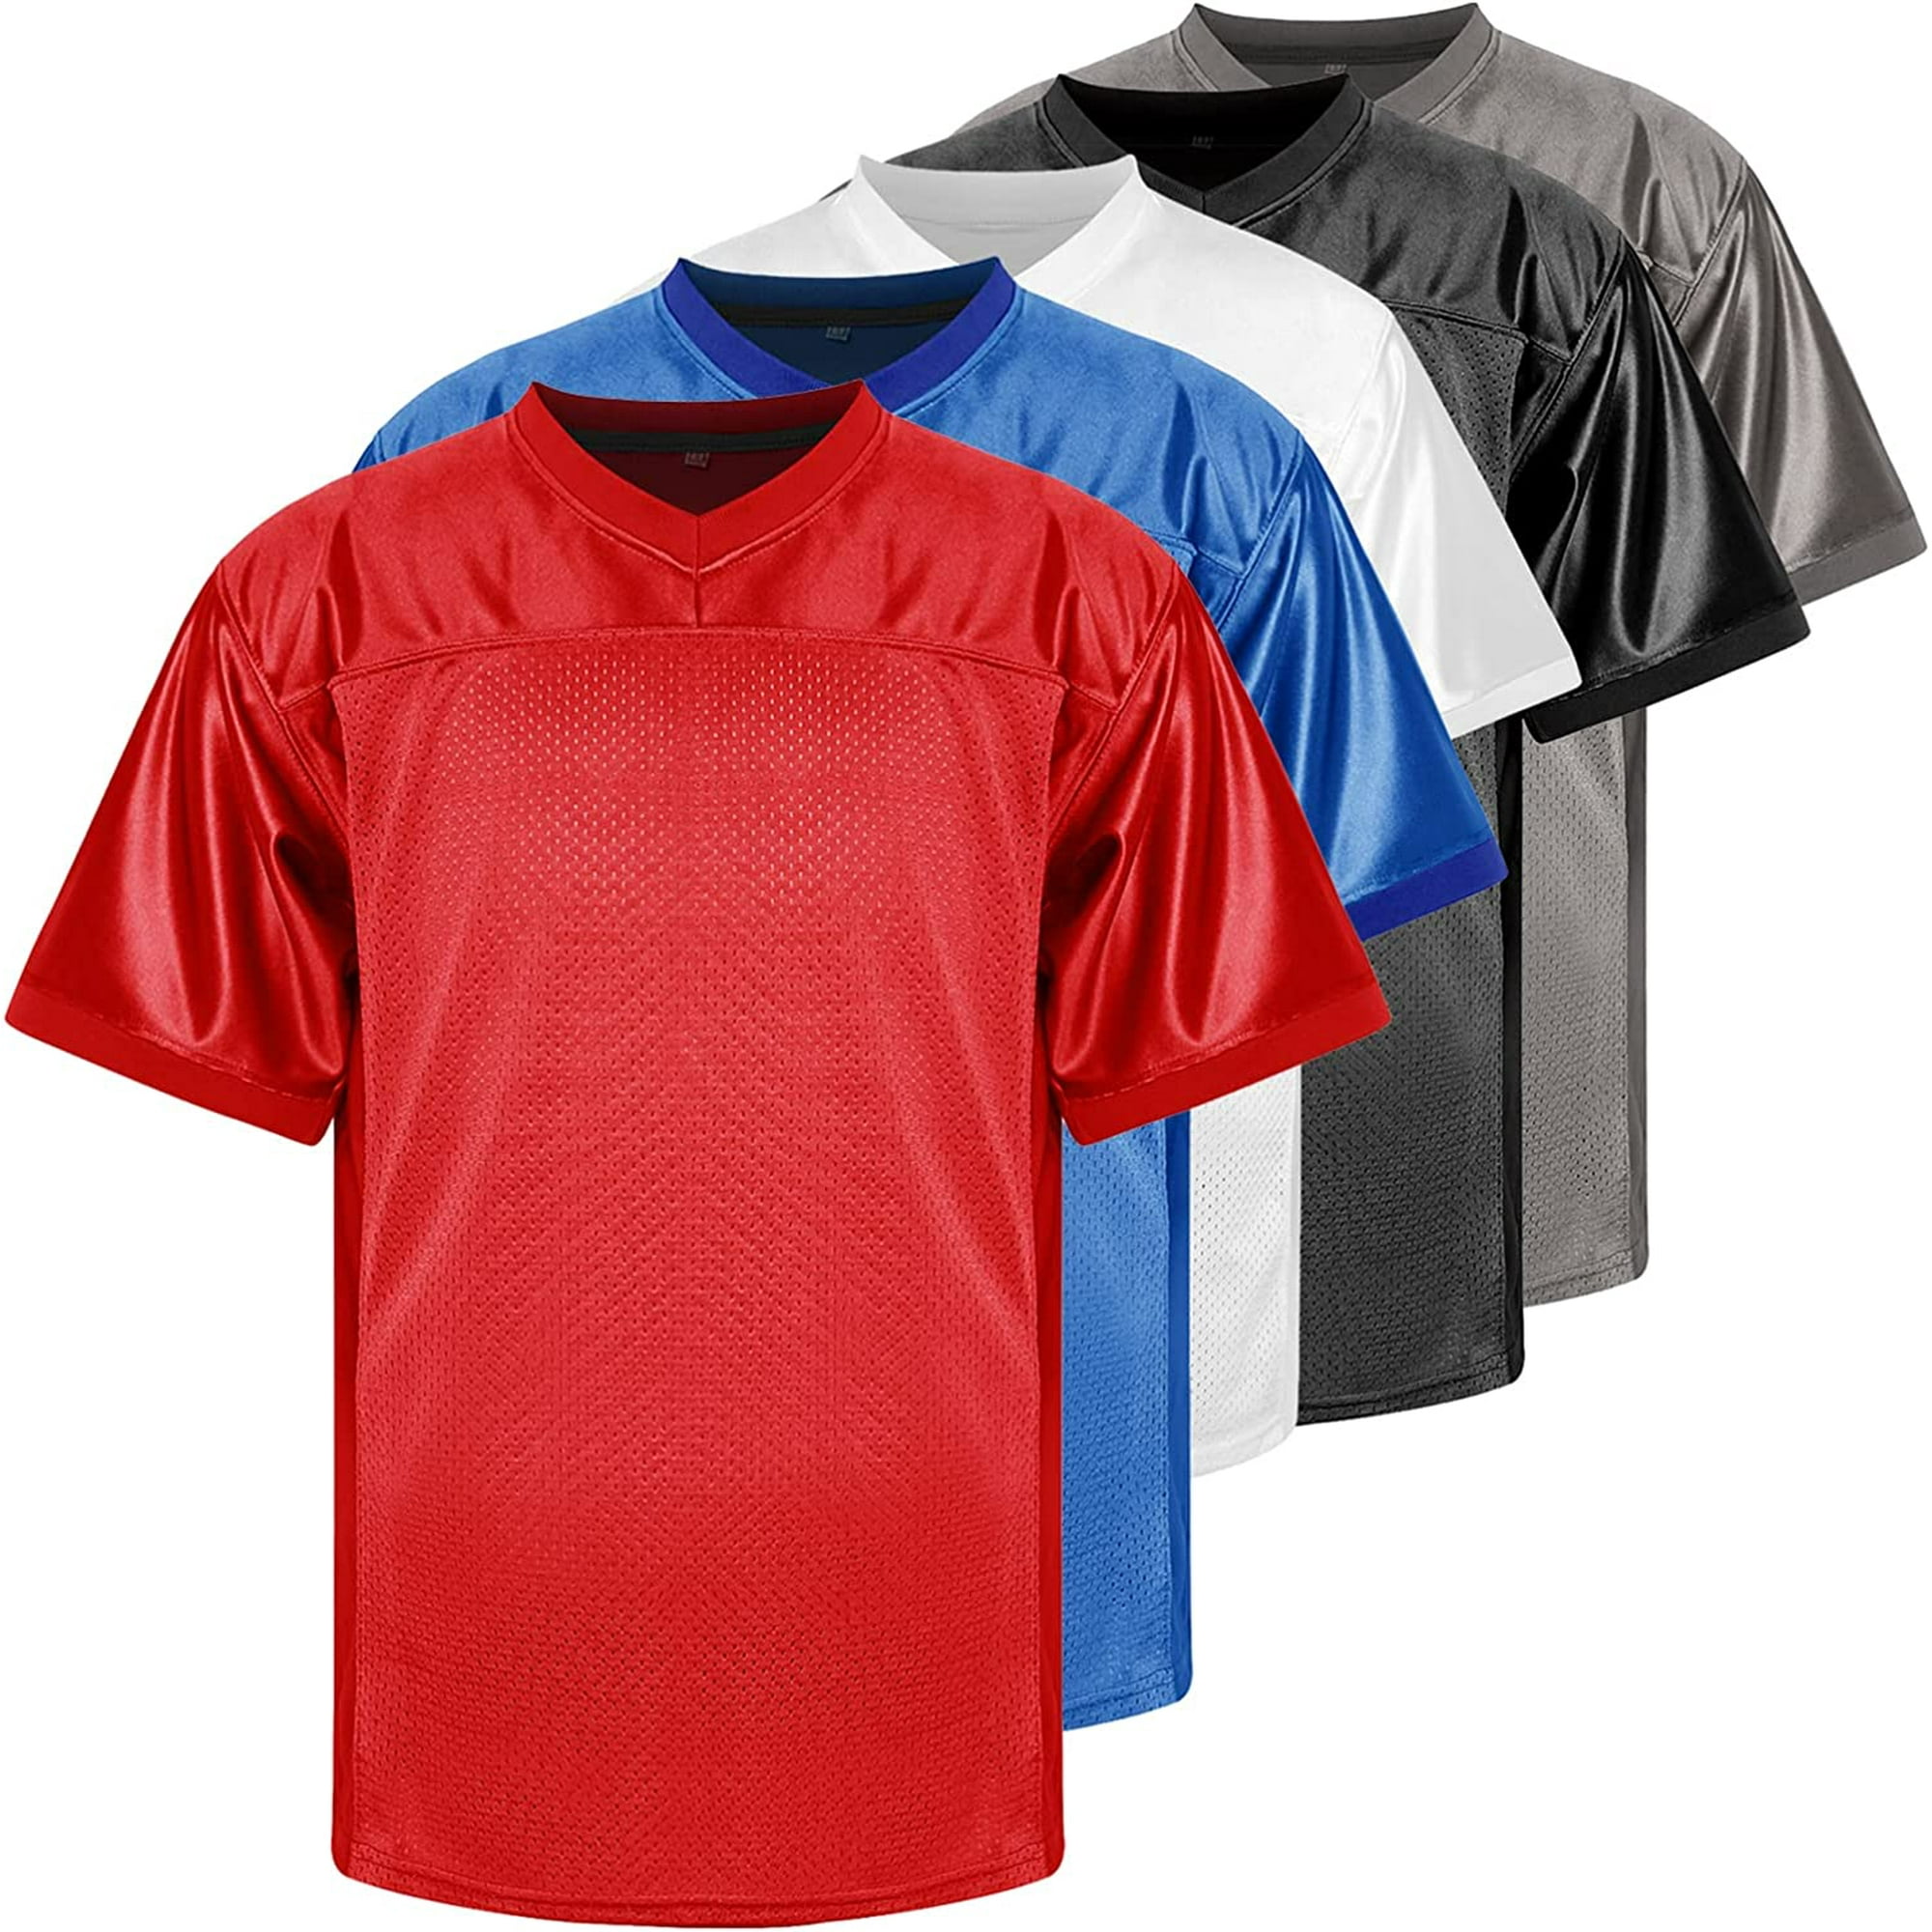 Phoneutrix Blank Football Jersey, Sports T-Shirt Hip Hop Jersey